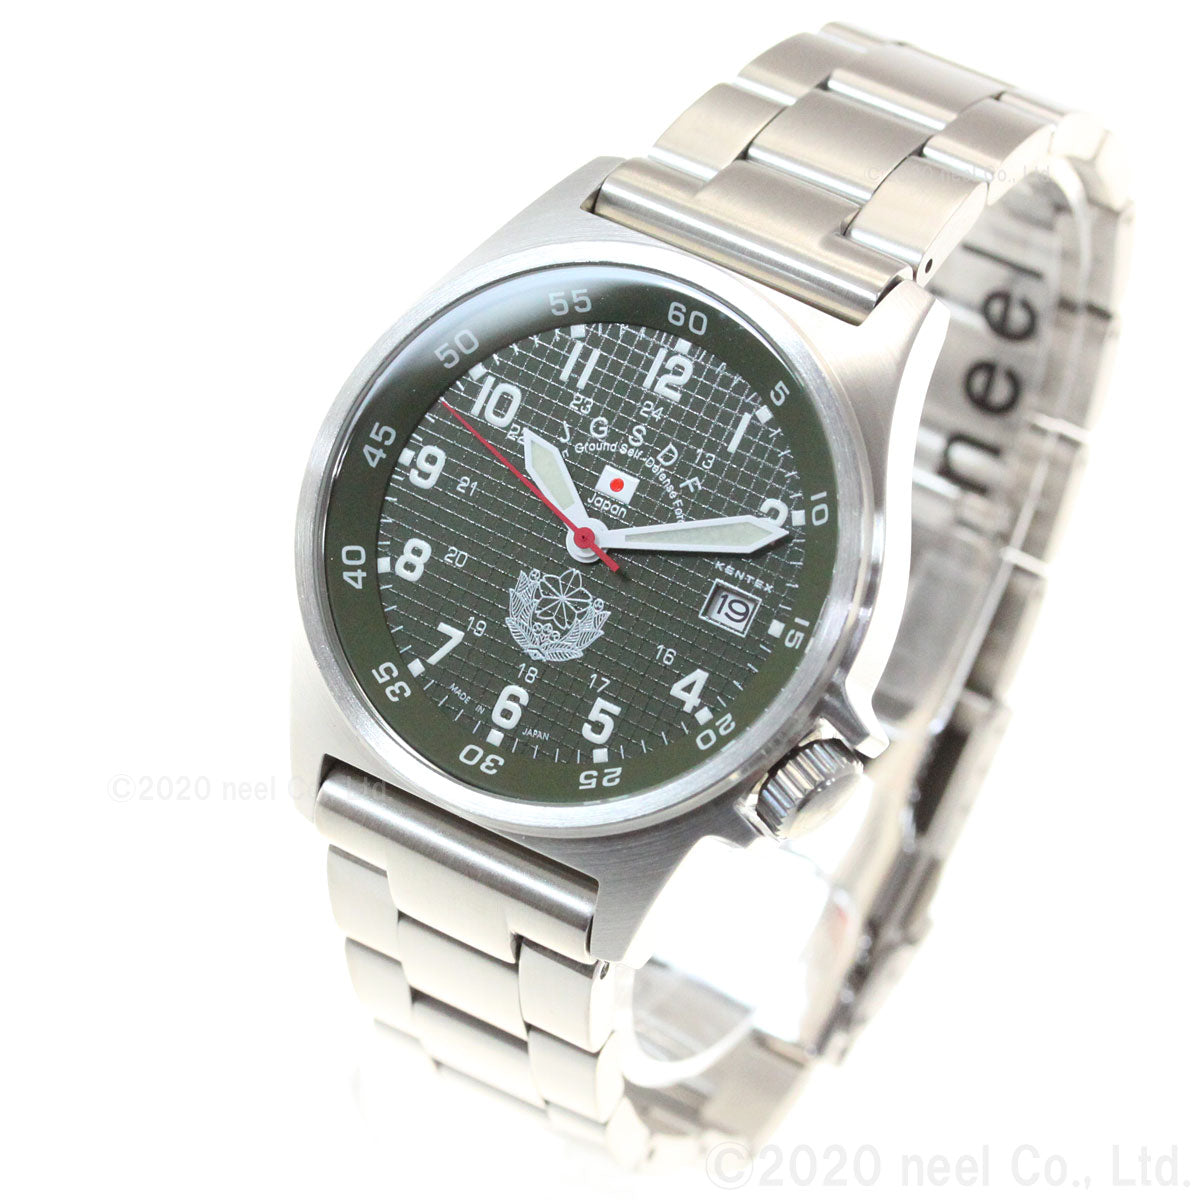 KENTEX ケンテックス 腕時計 メンズ JSDF スタンダード 自衛隊モデル 陸上自衛隊 S455M-09【正規品】【送料無料】